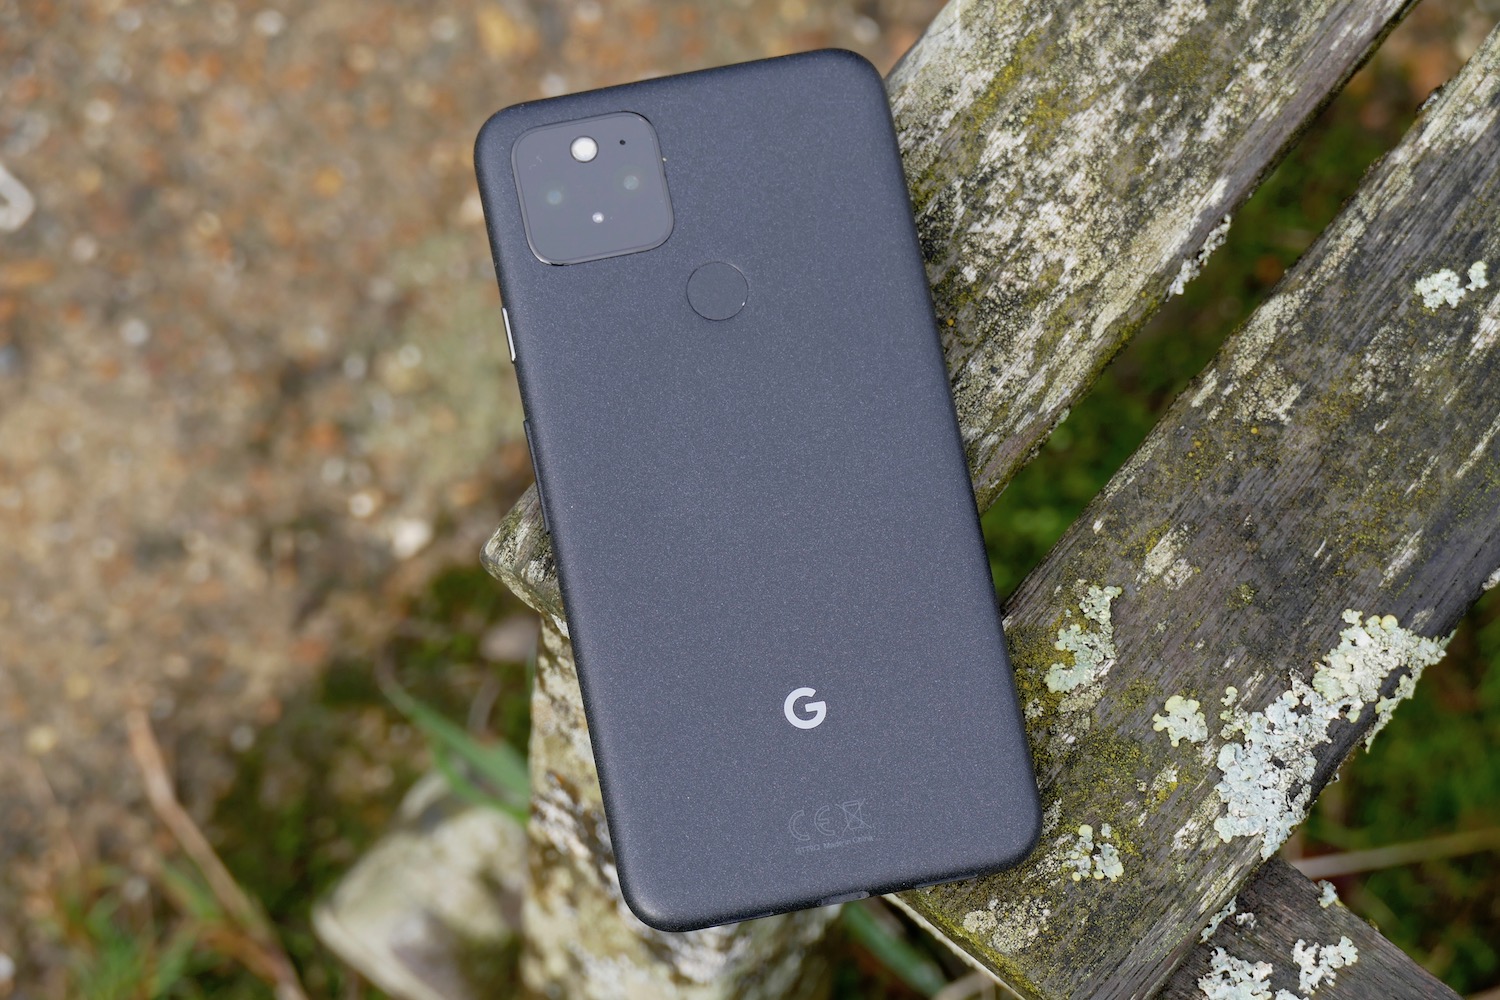 The Google Pixel 5's rear casing, in black.